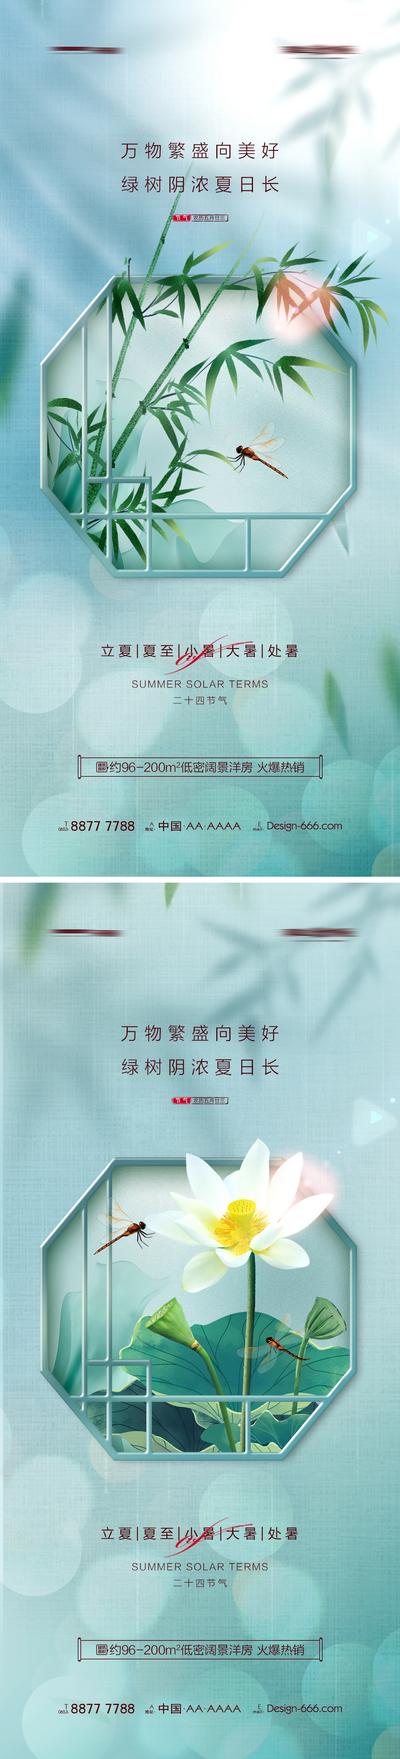 【南门网】海报 地产 二十四节气 立夏 夏至 小暑 大暑 处暑 中式 庭院 蜻蜓 荷花 系列 